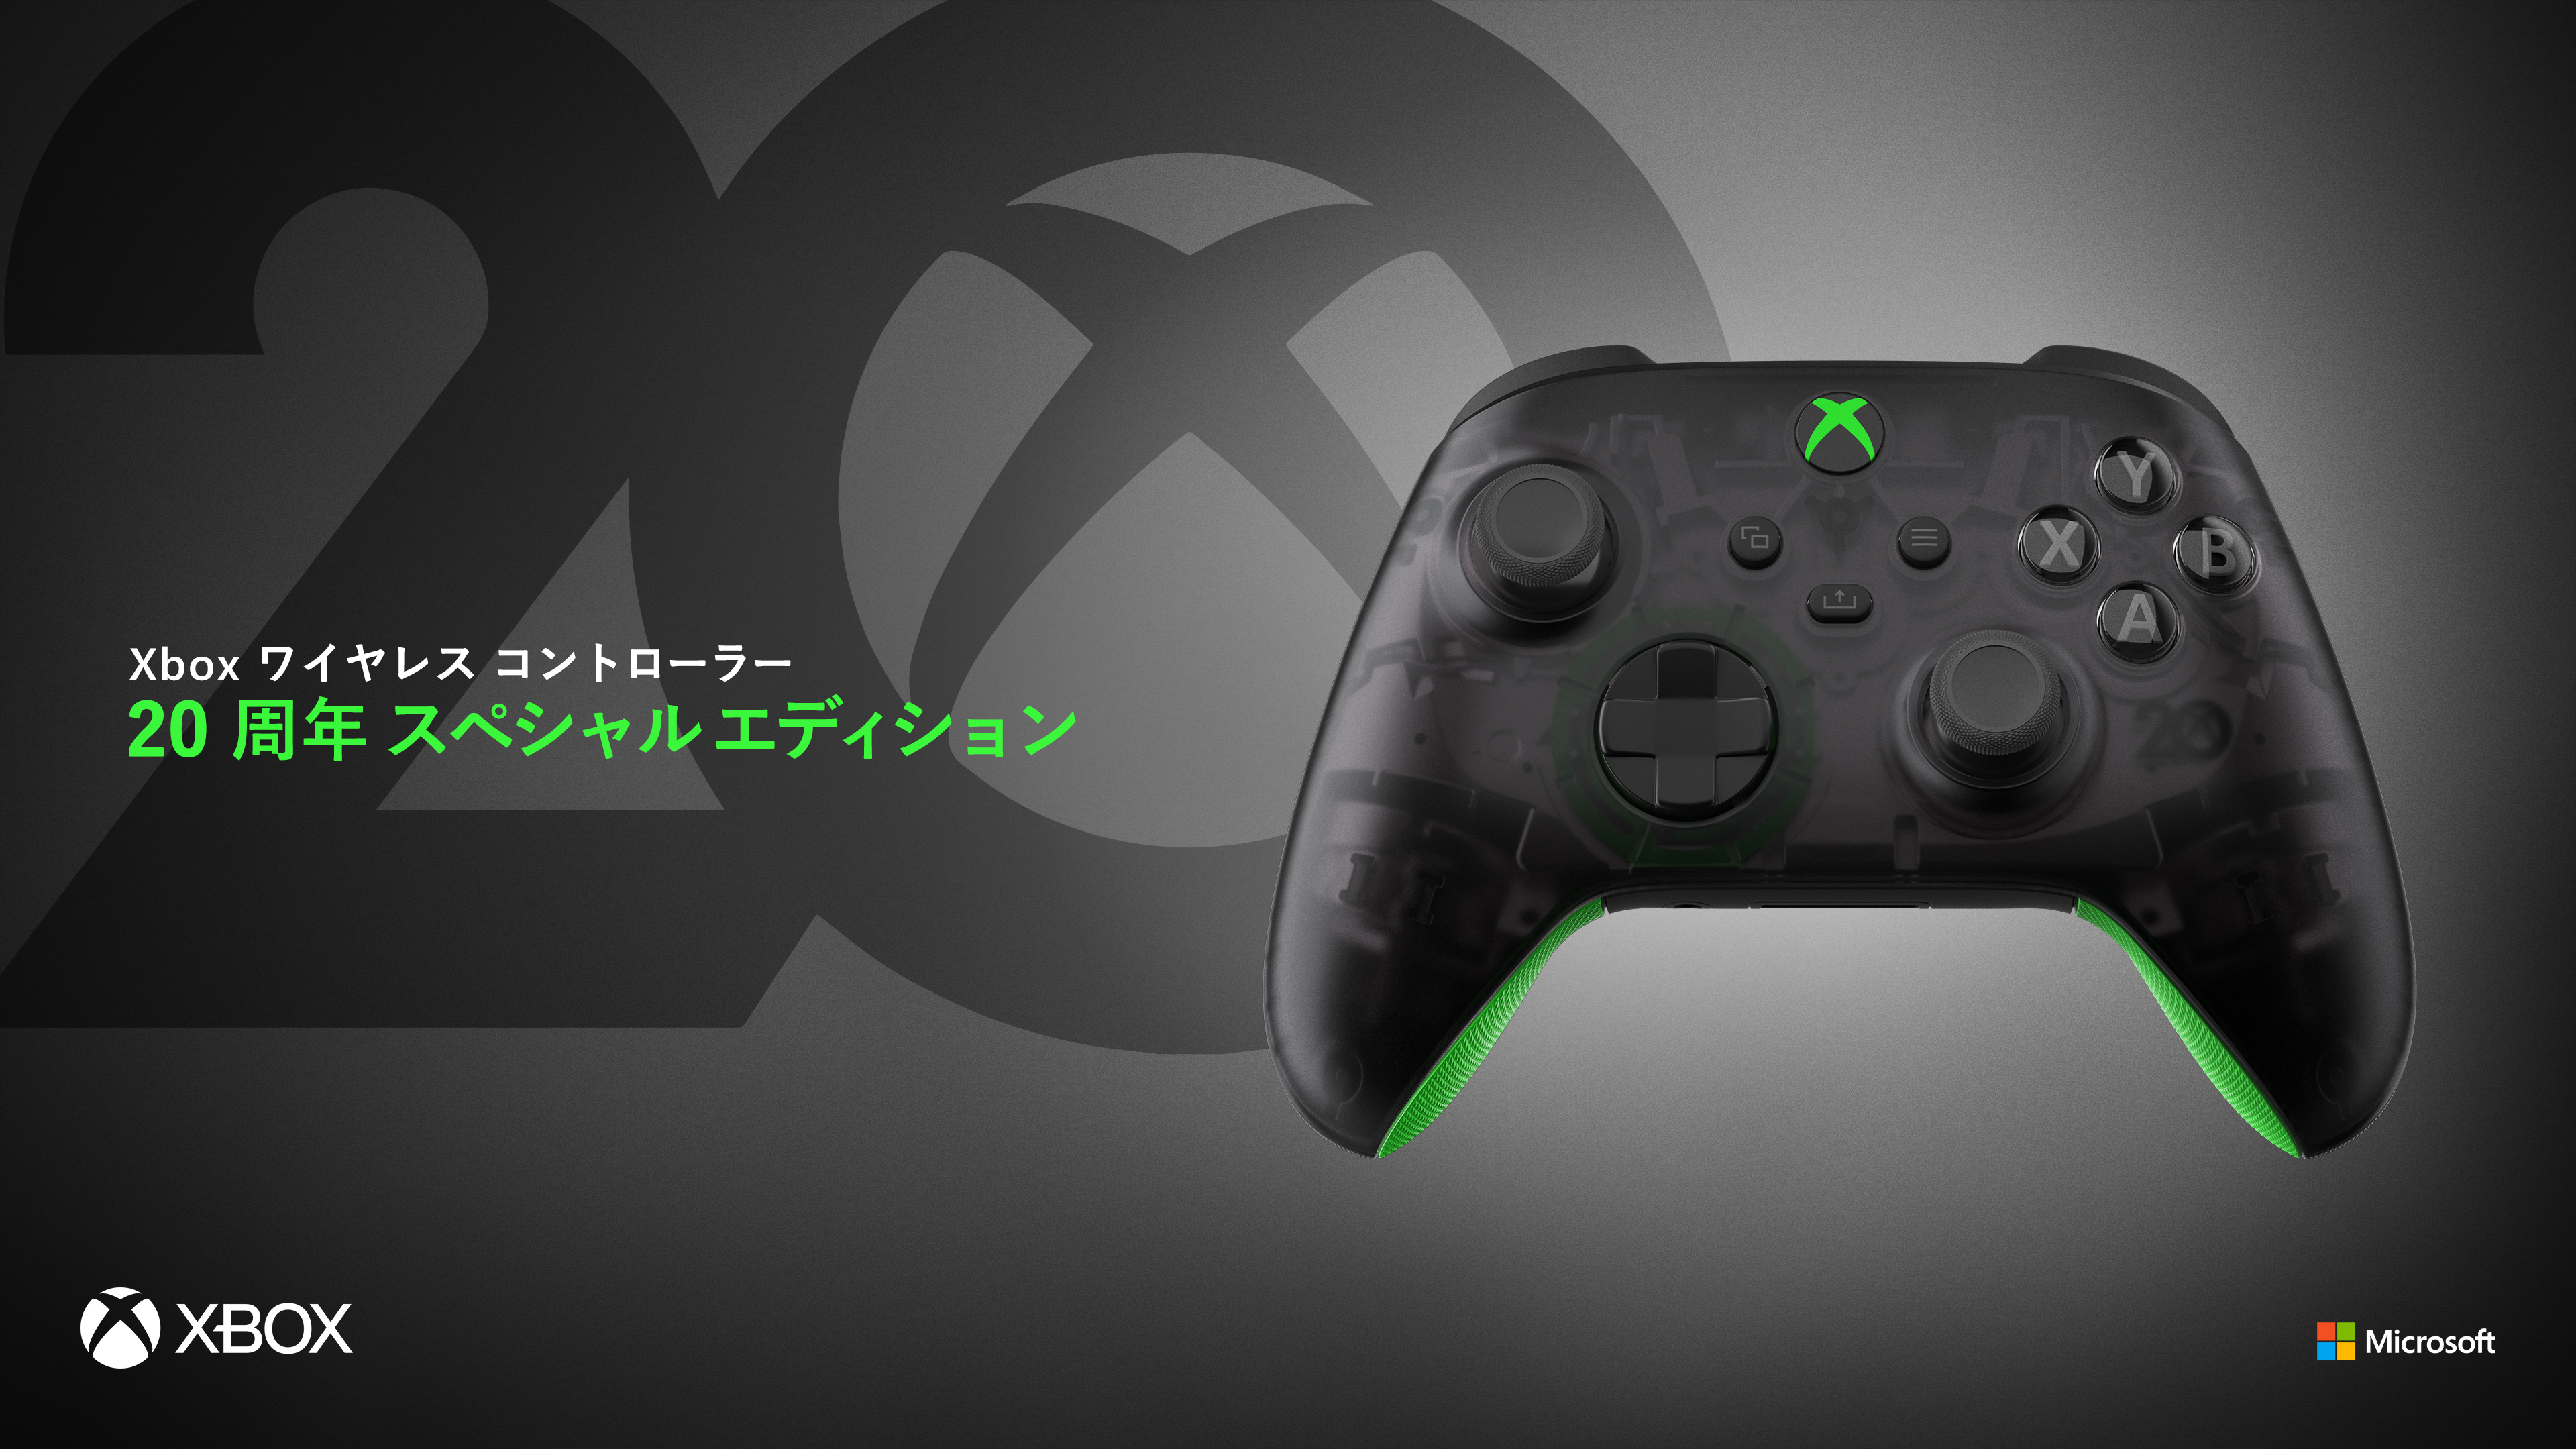 Xbox Japan on X: 